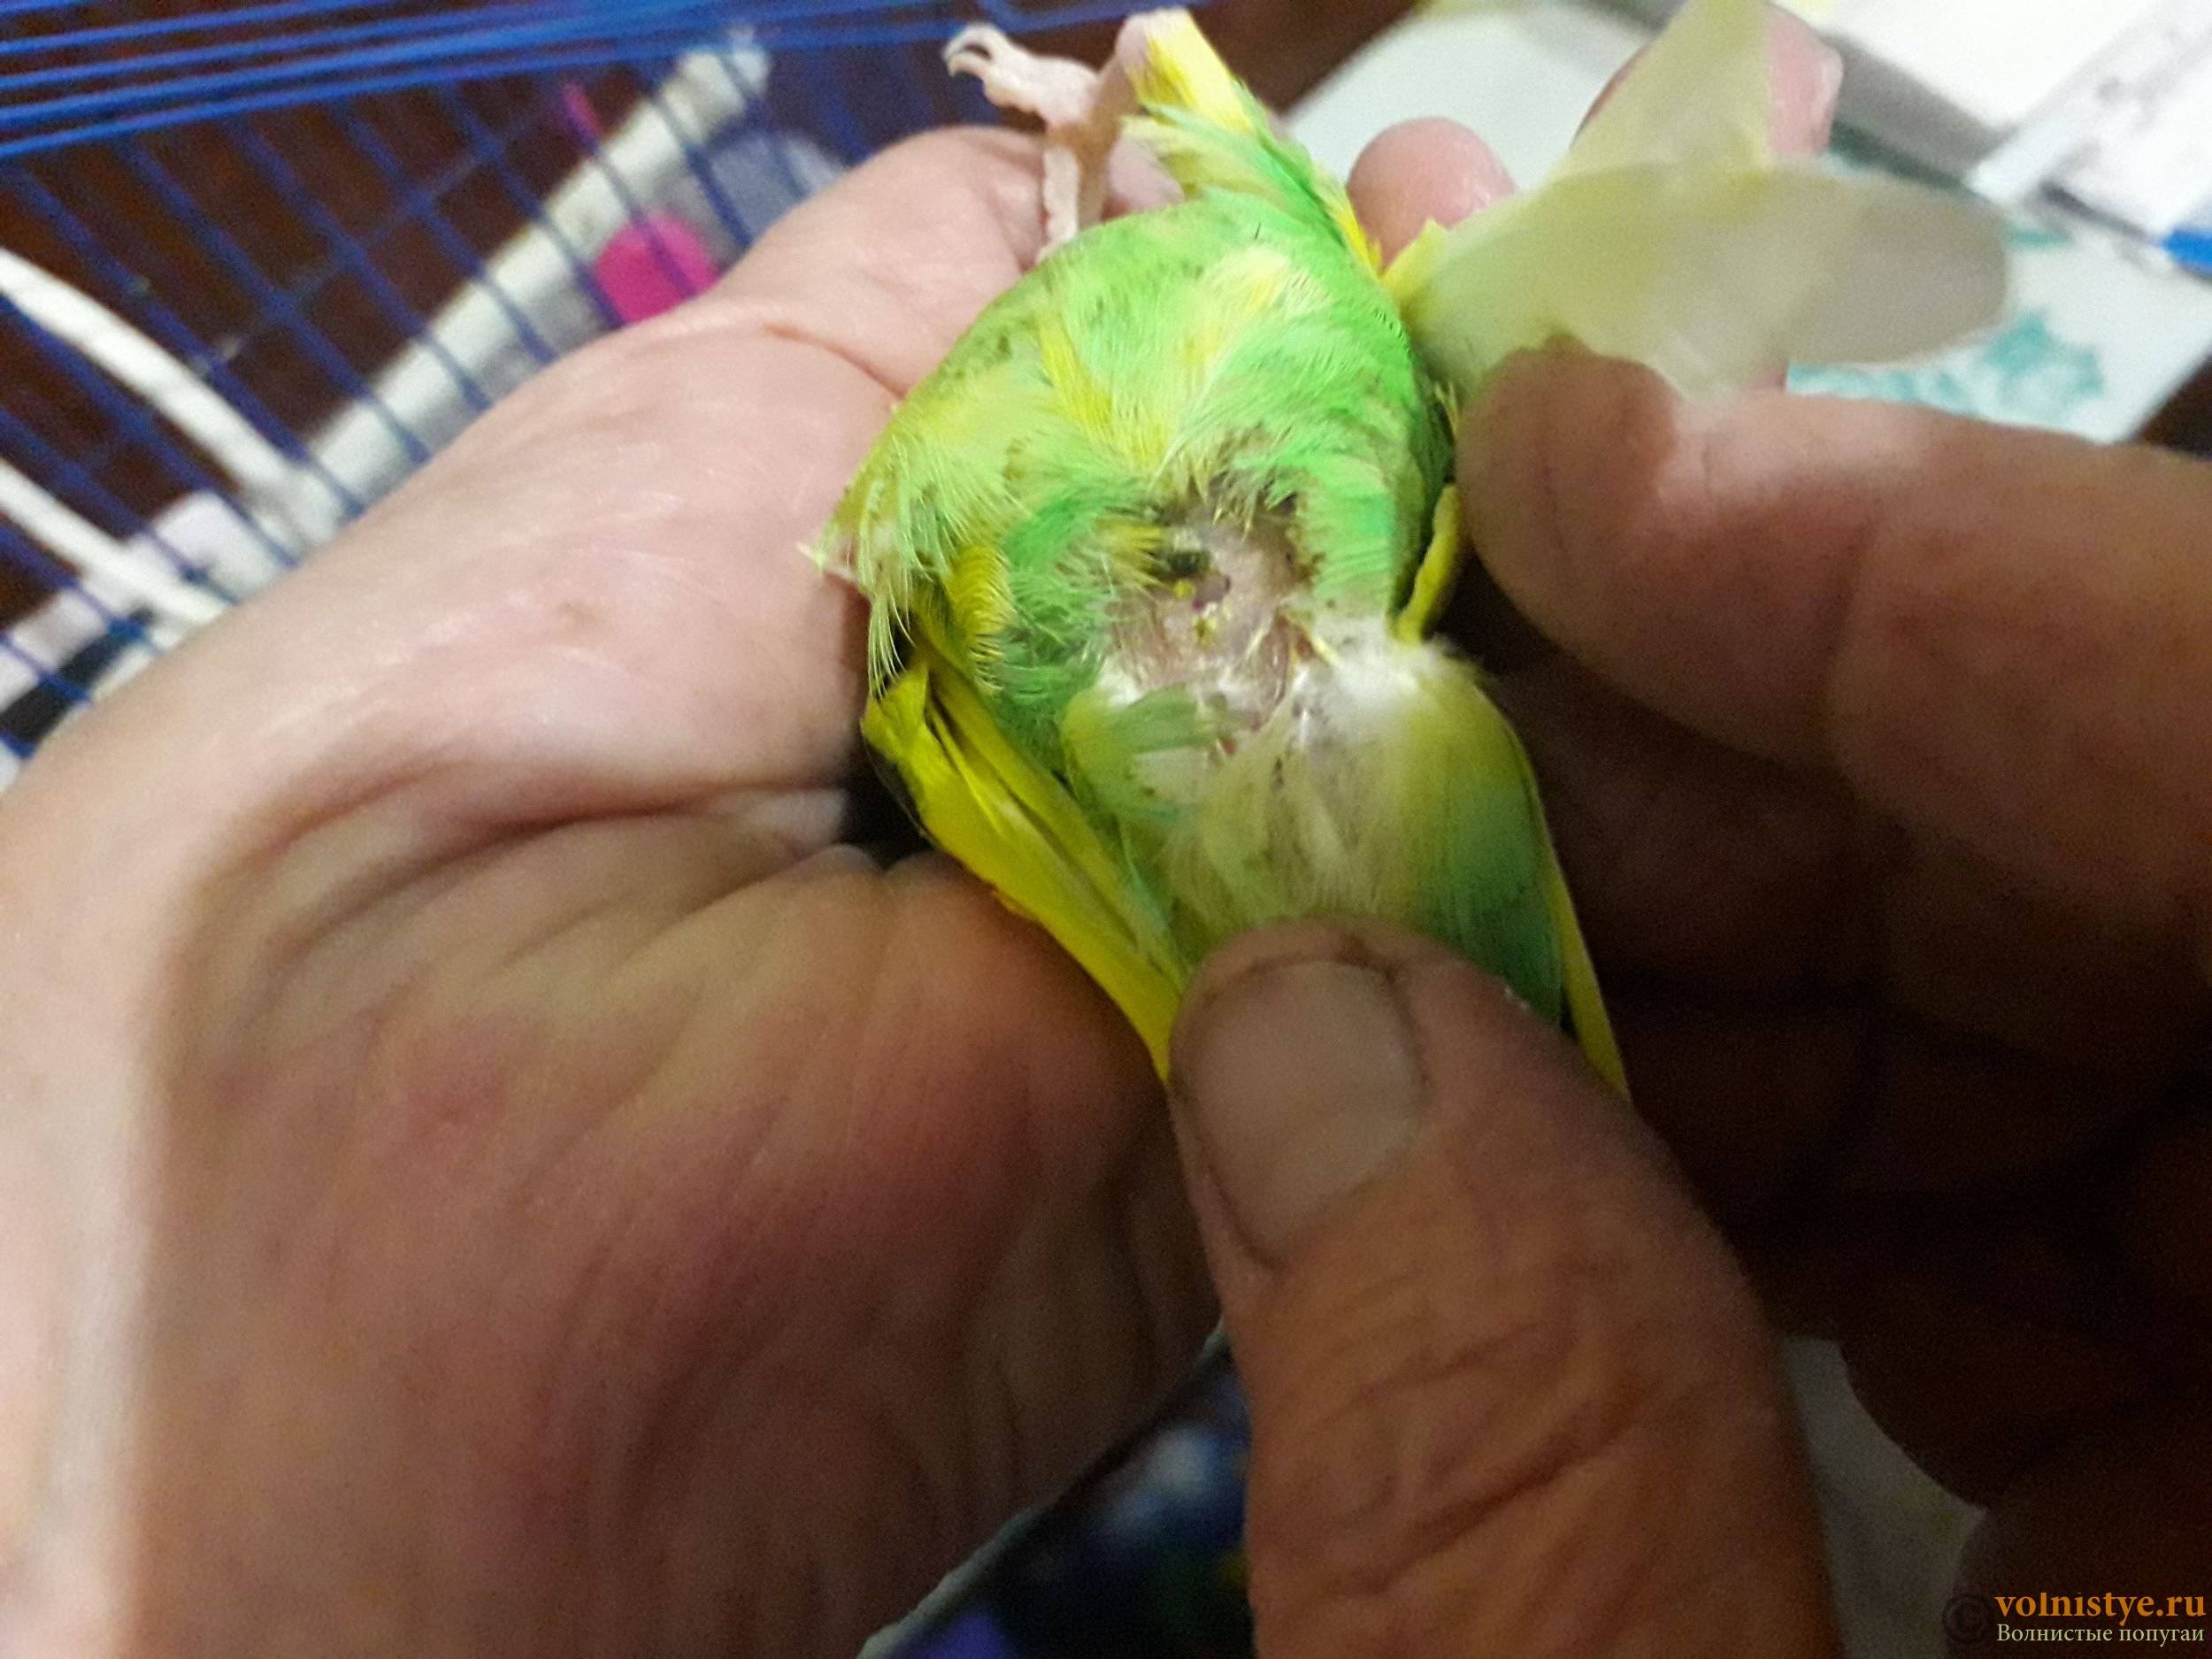 Болезни кожи и перьев у попугаев